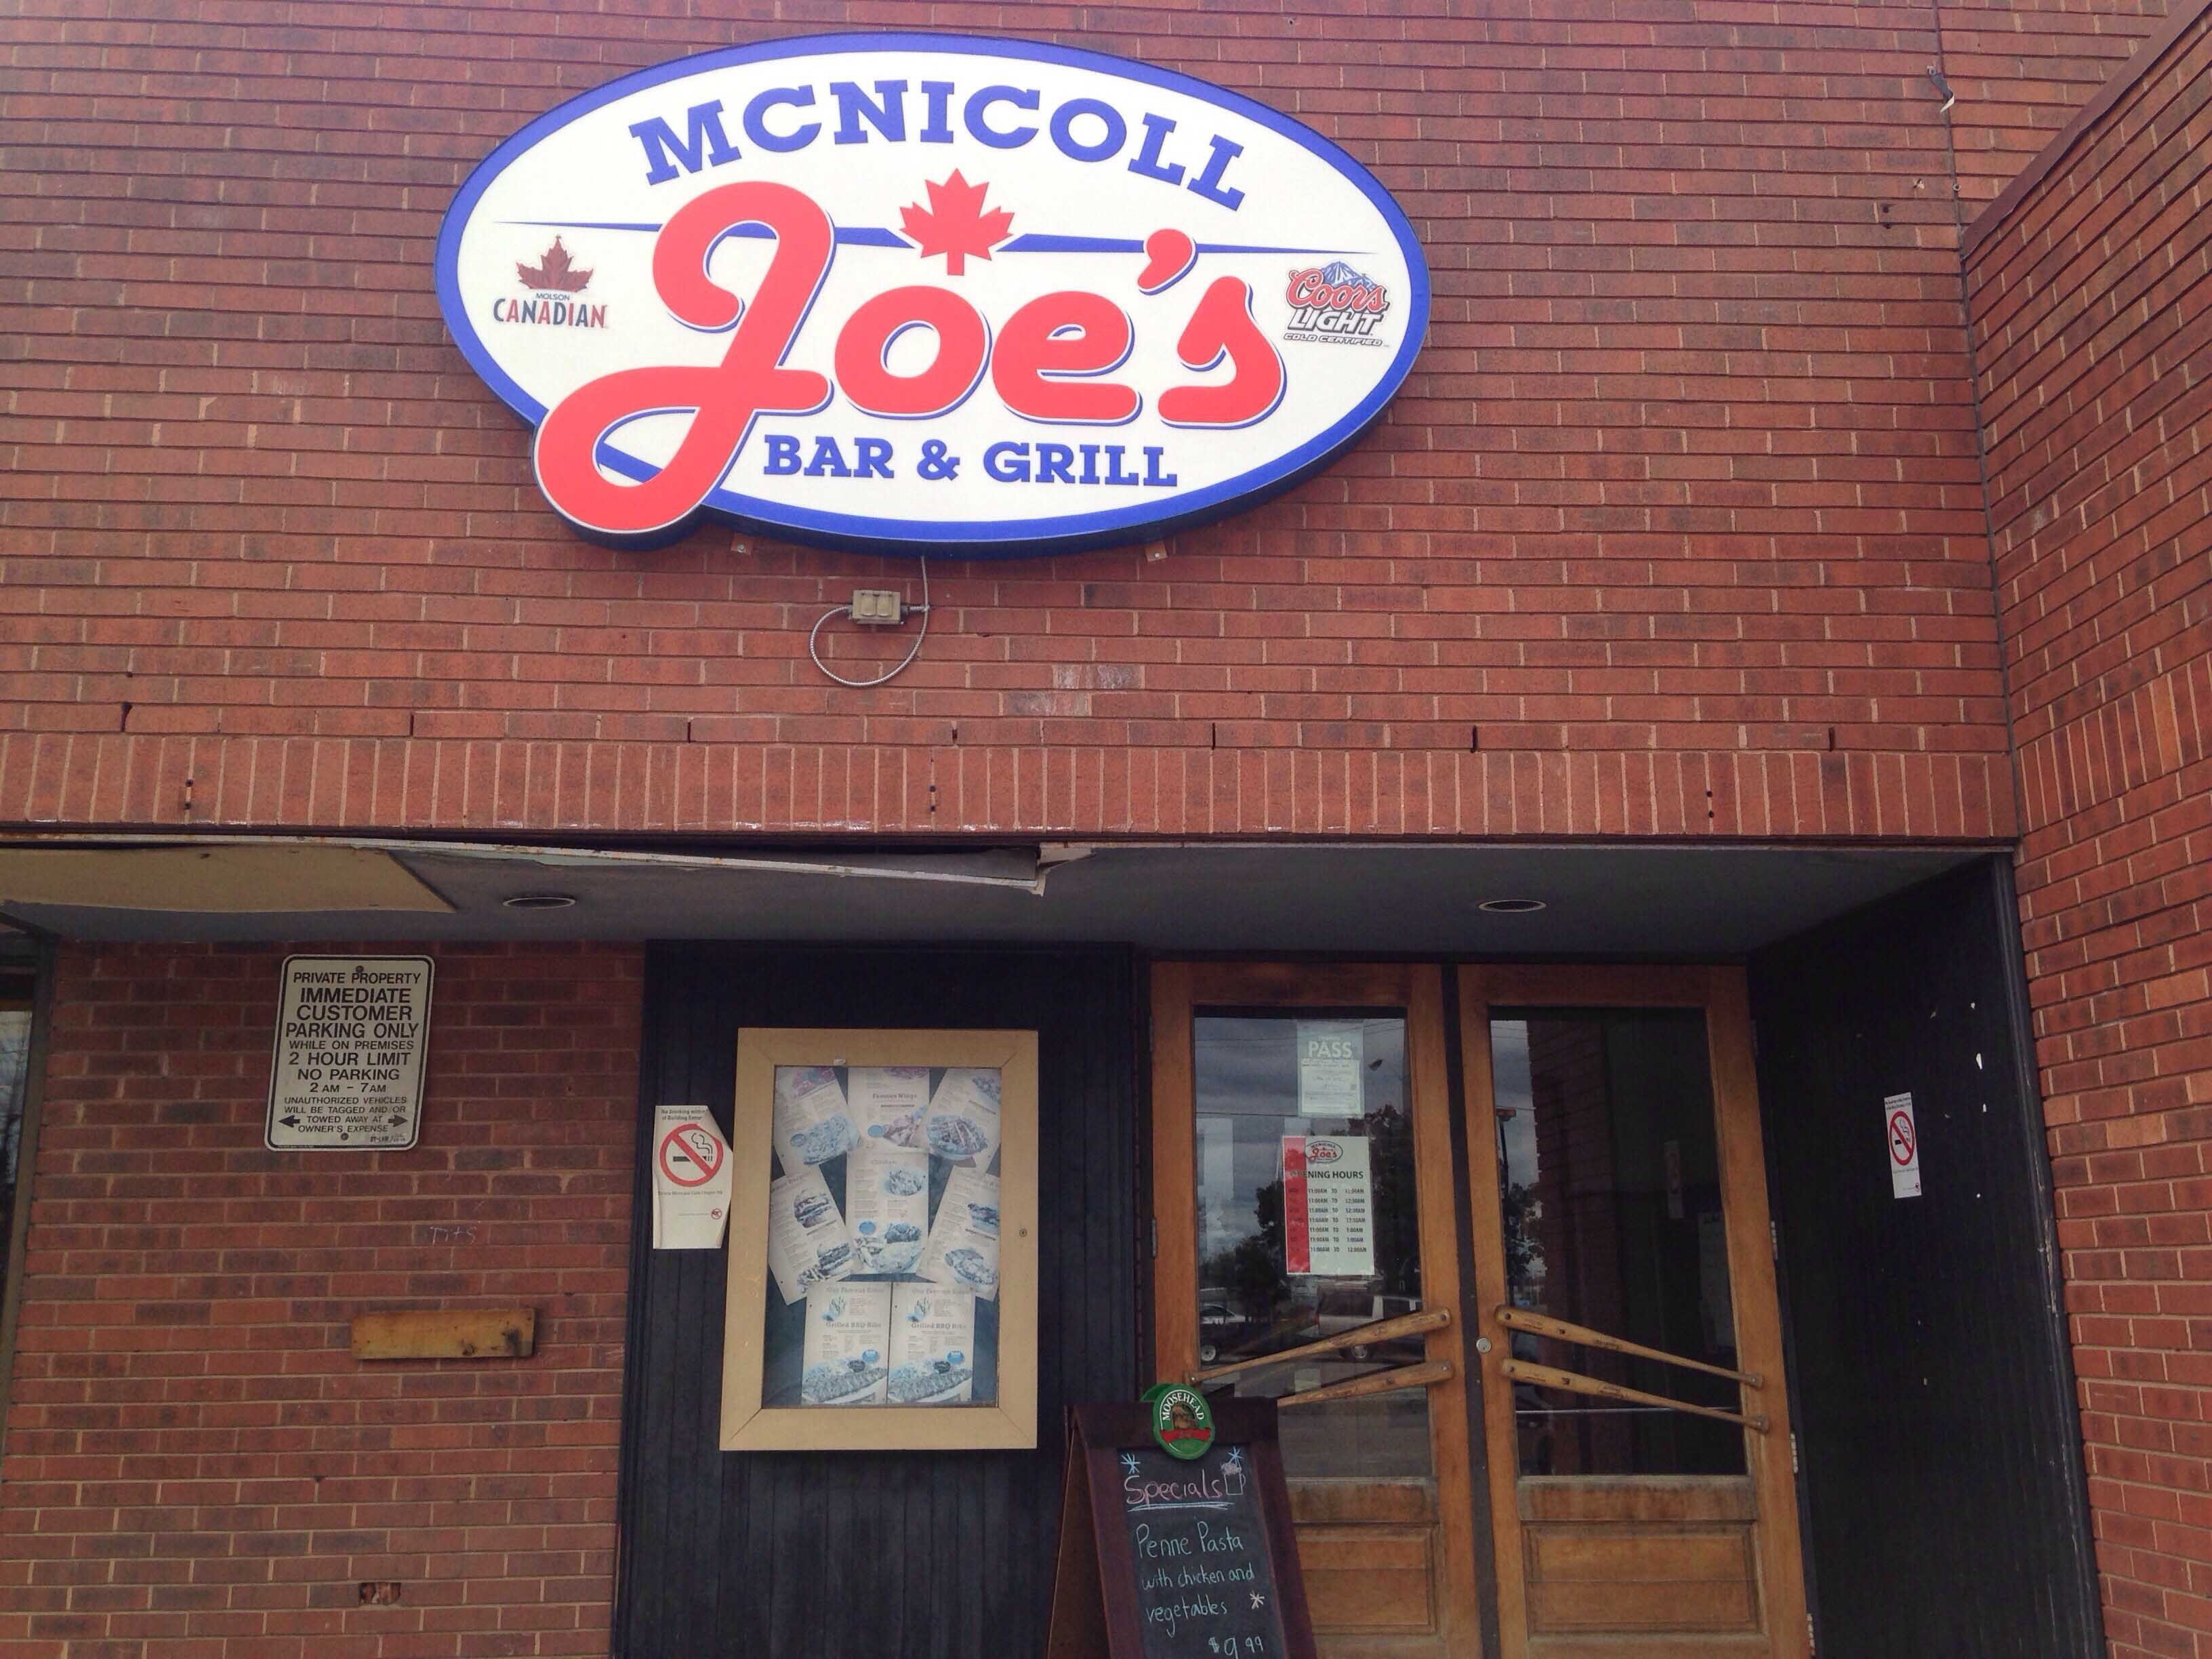 Mcnicoll Joe's